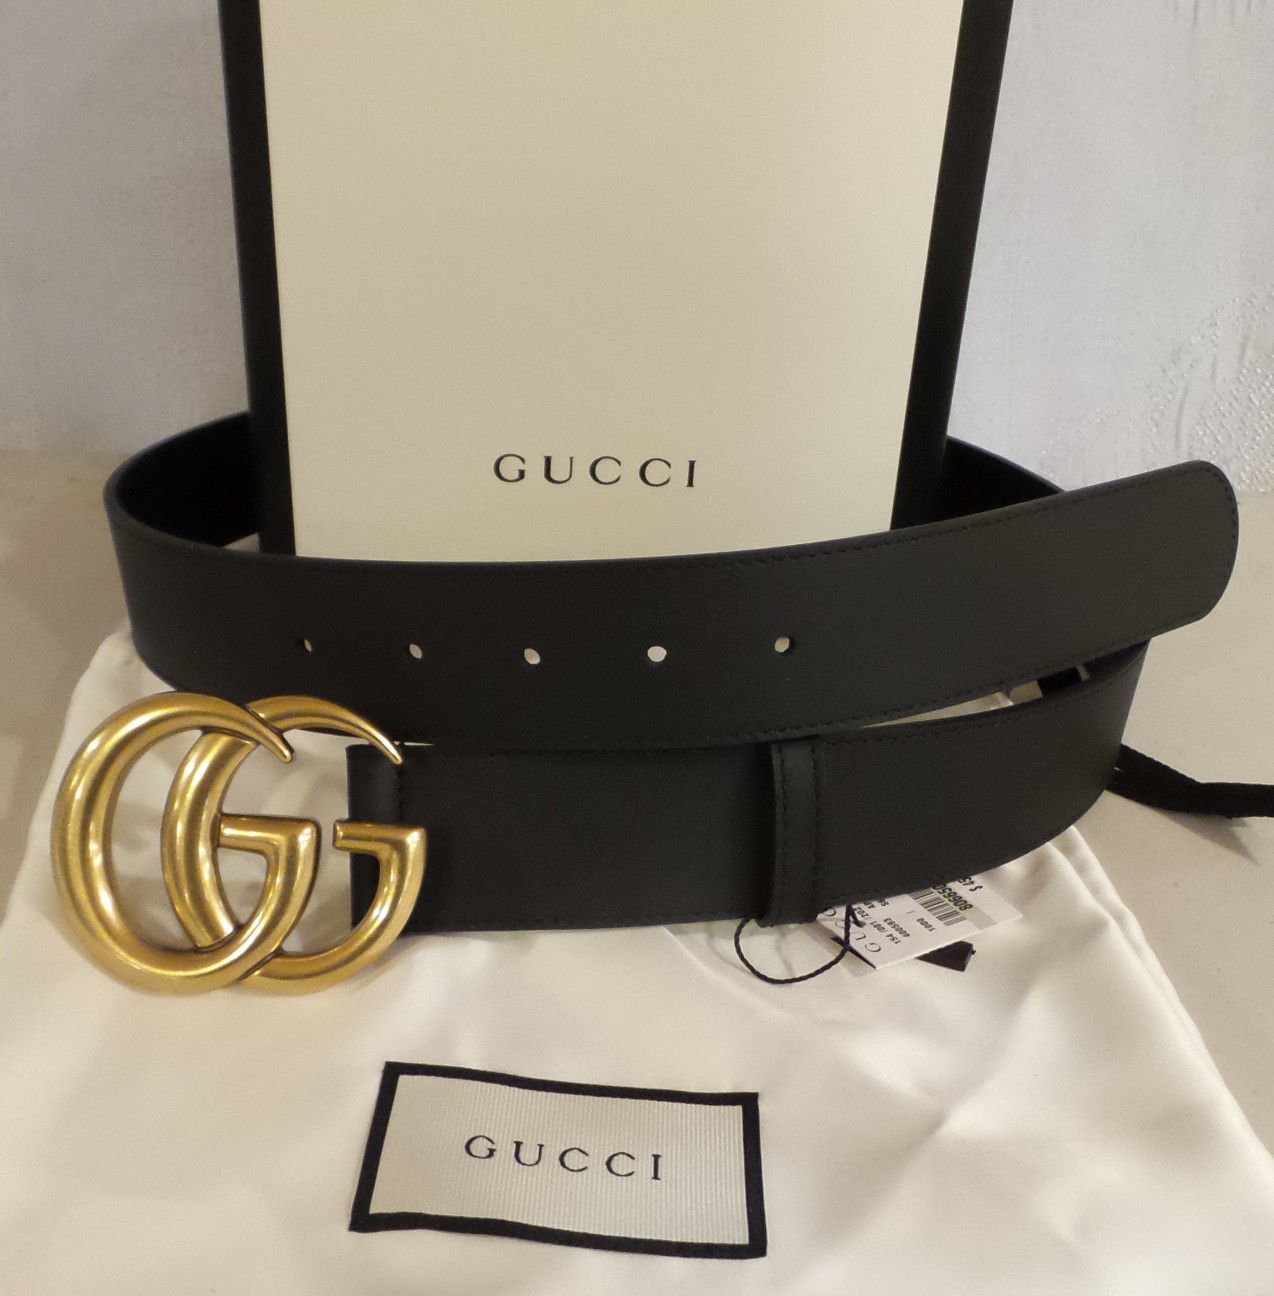 New Gucci Marmont Belt Black louis Vuitton LV Versace Ferragamo fendi wallet bag